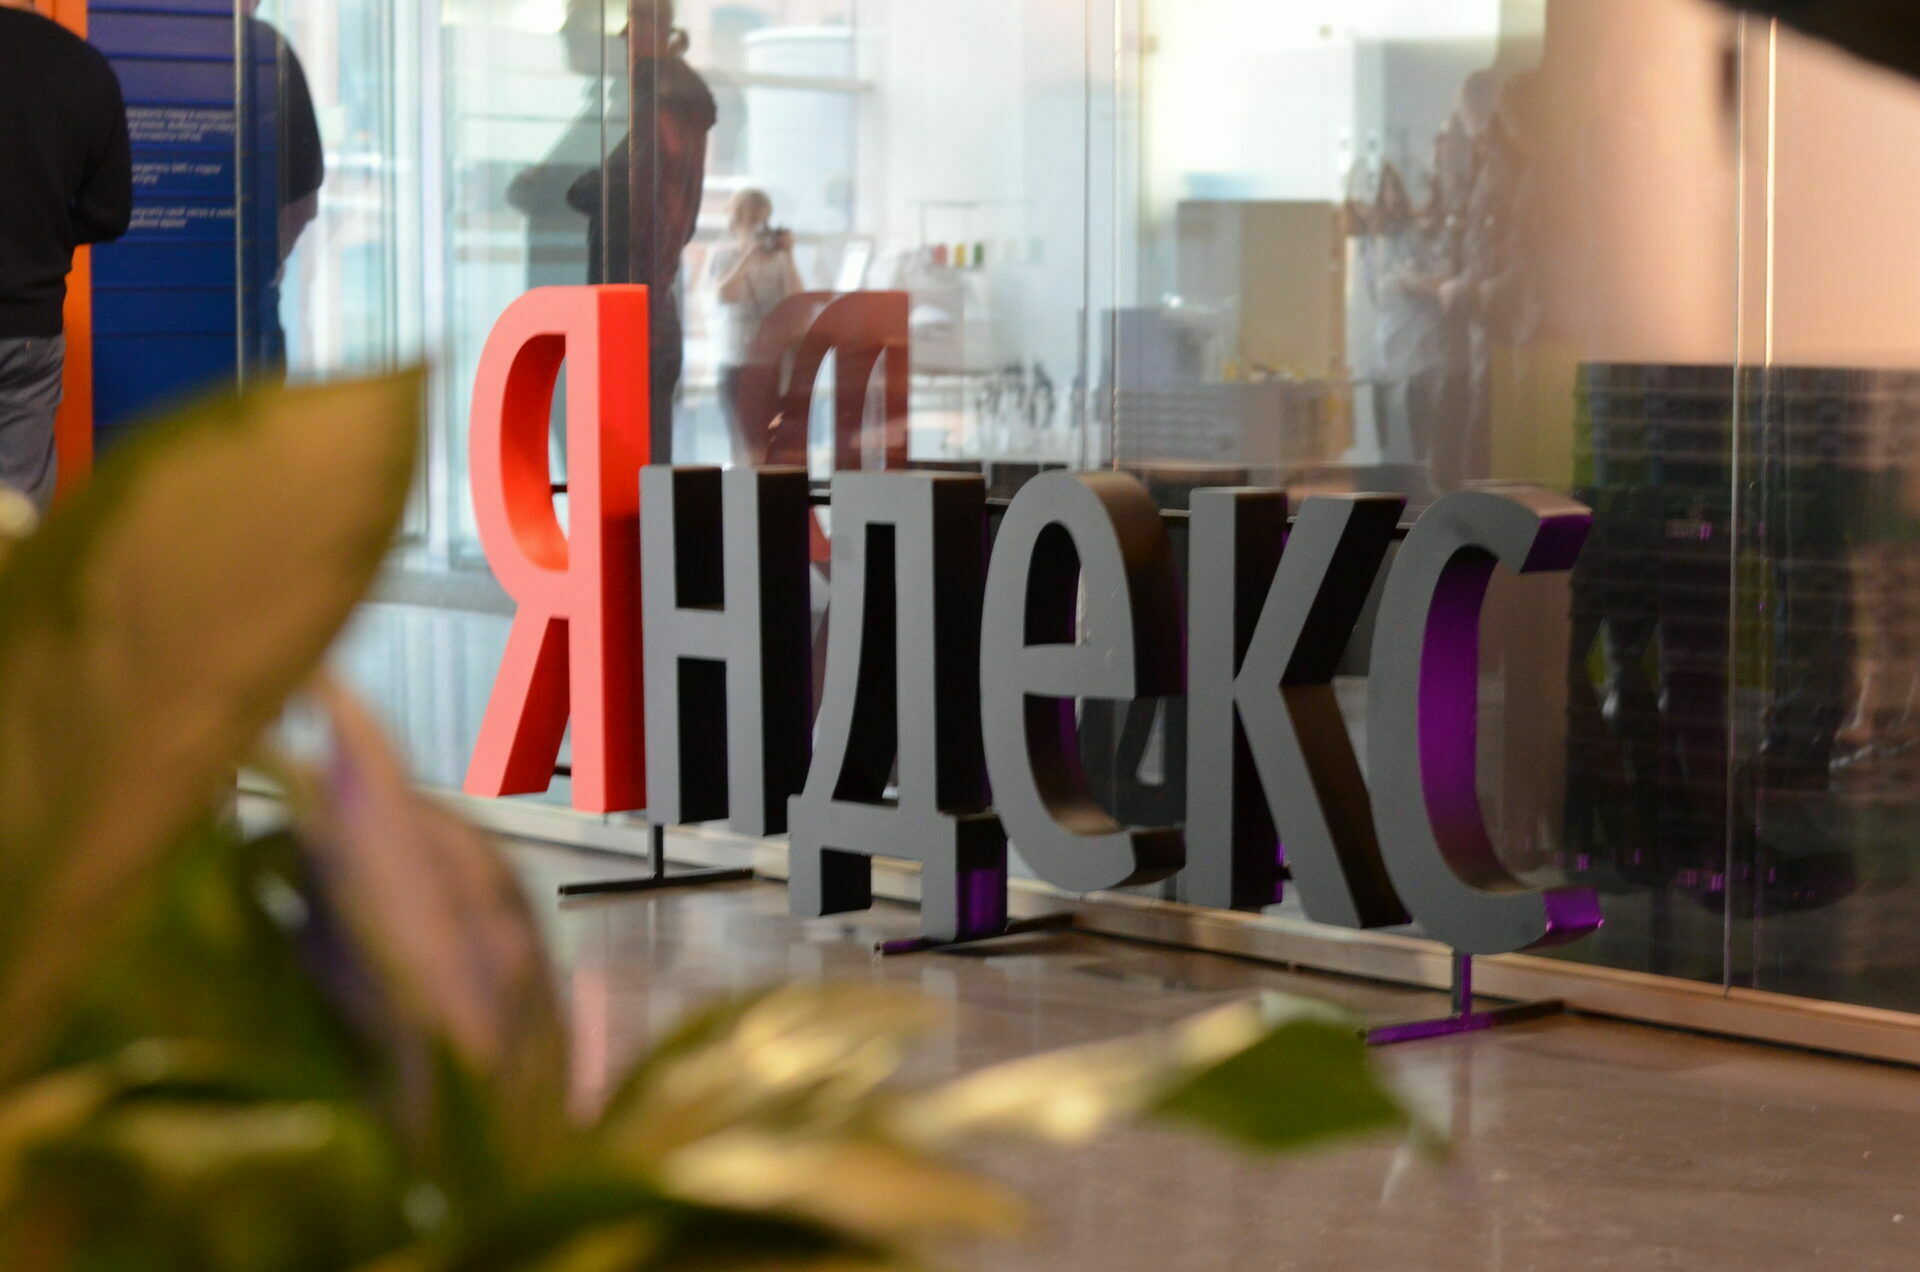 ФАС завела дело на "Яндекс" за рекламу его сервисом и дискриминацию услуг конкурентов